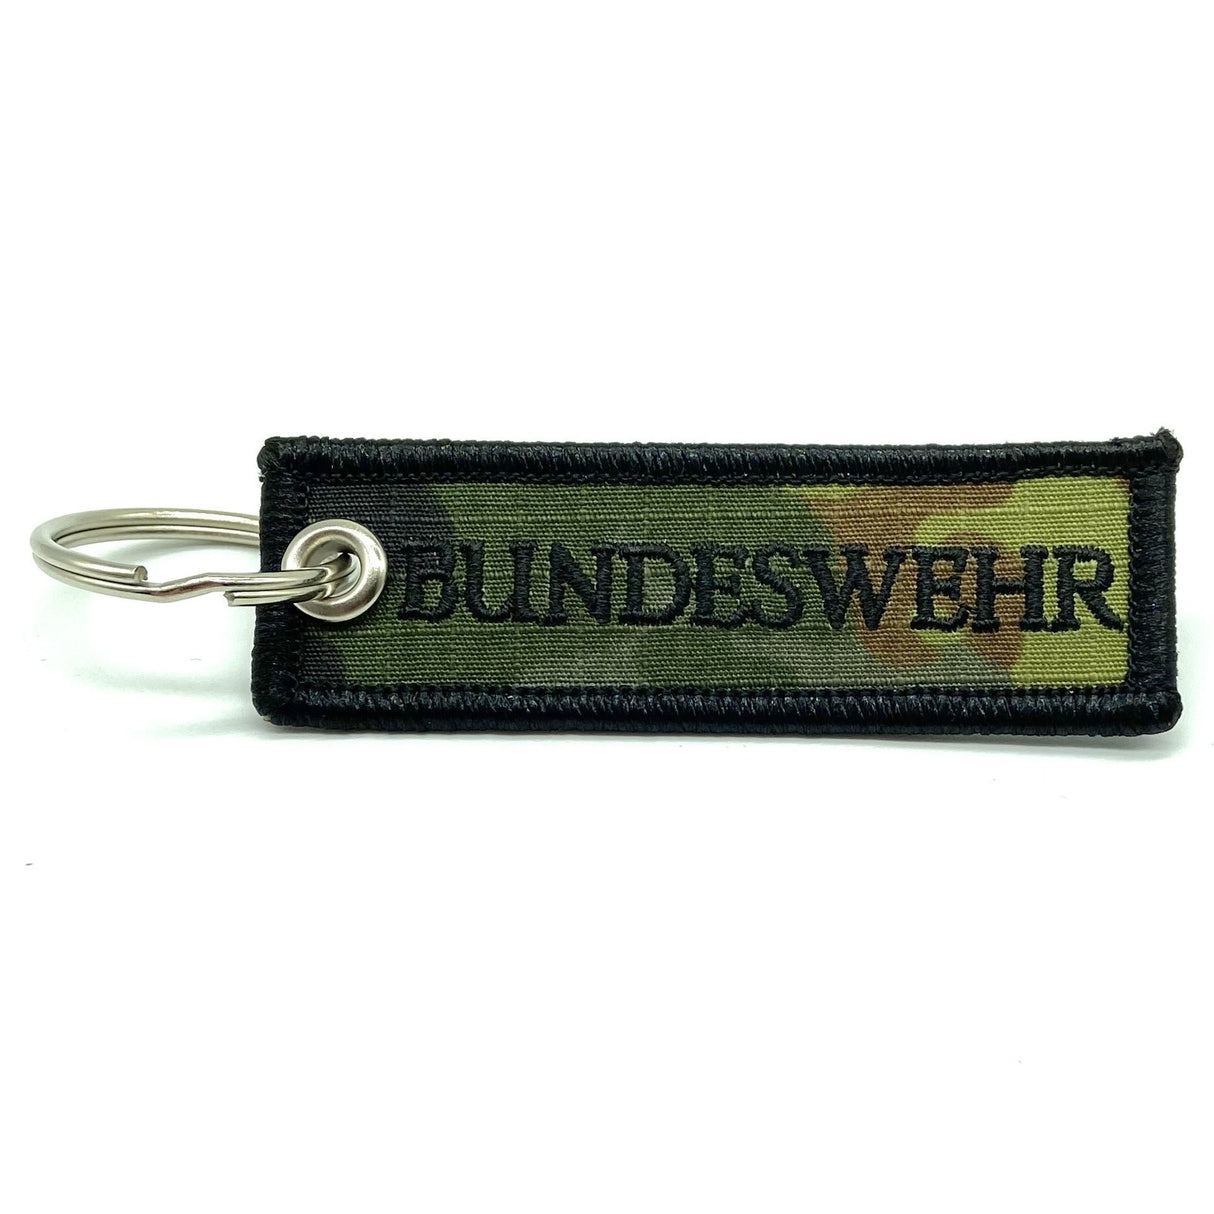 Bundeswehr key ring textile